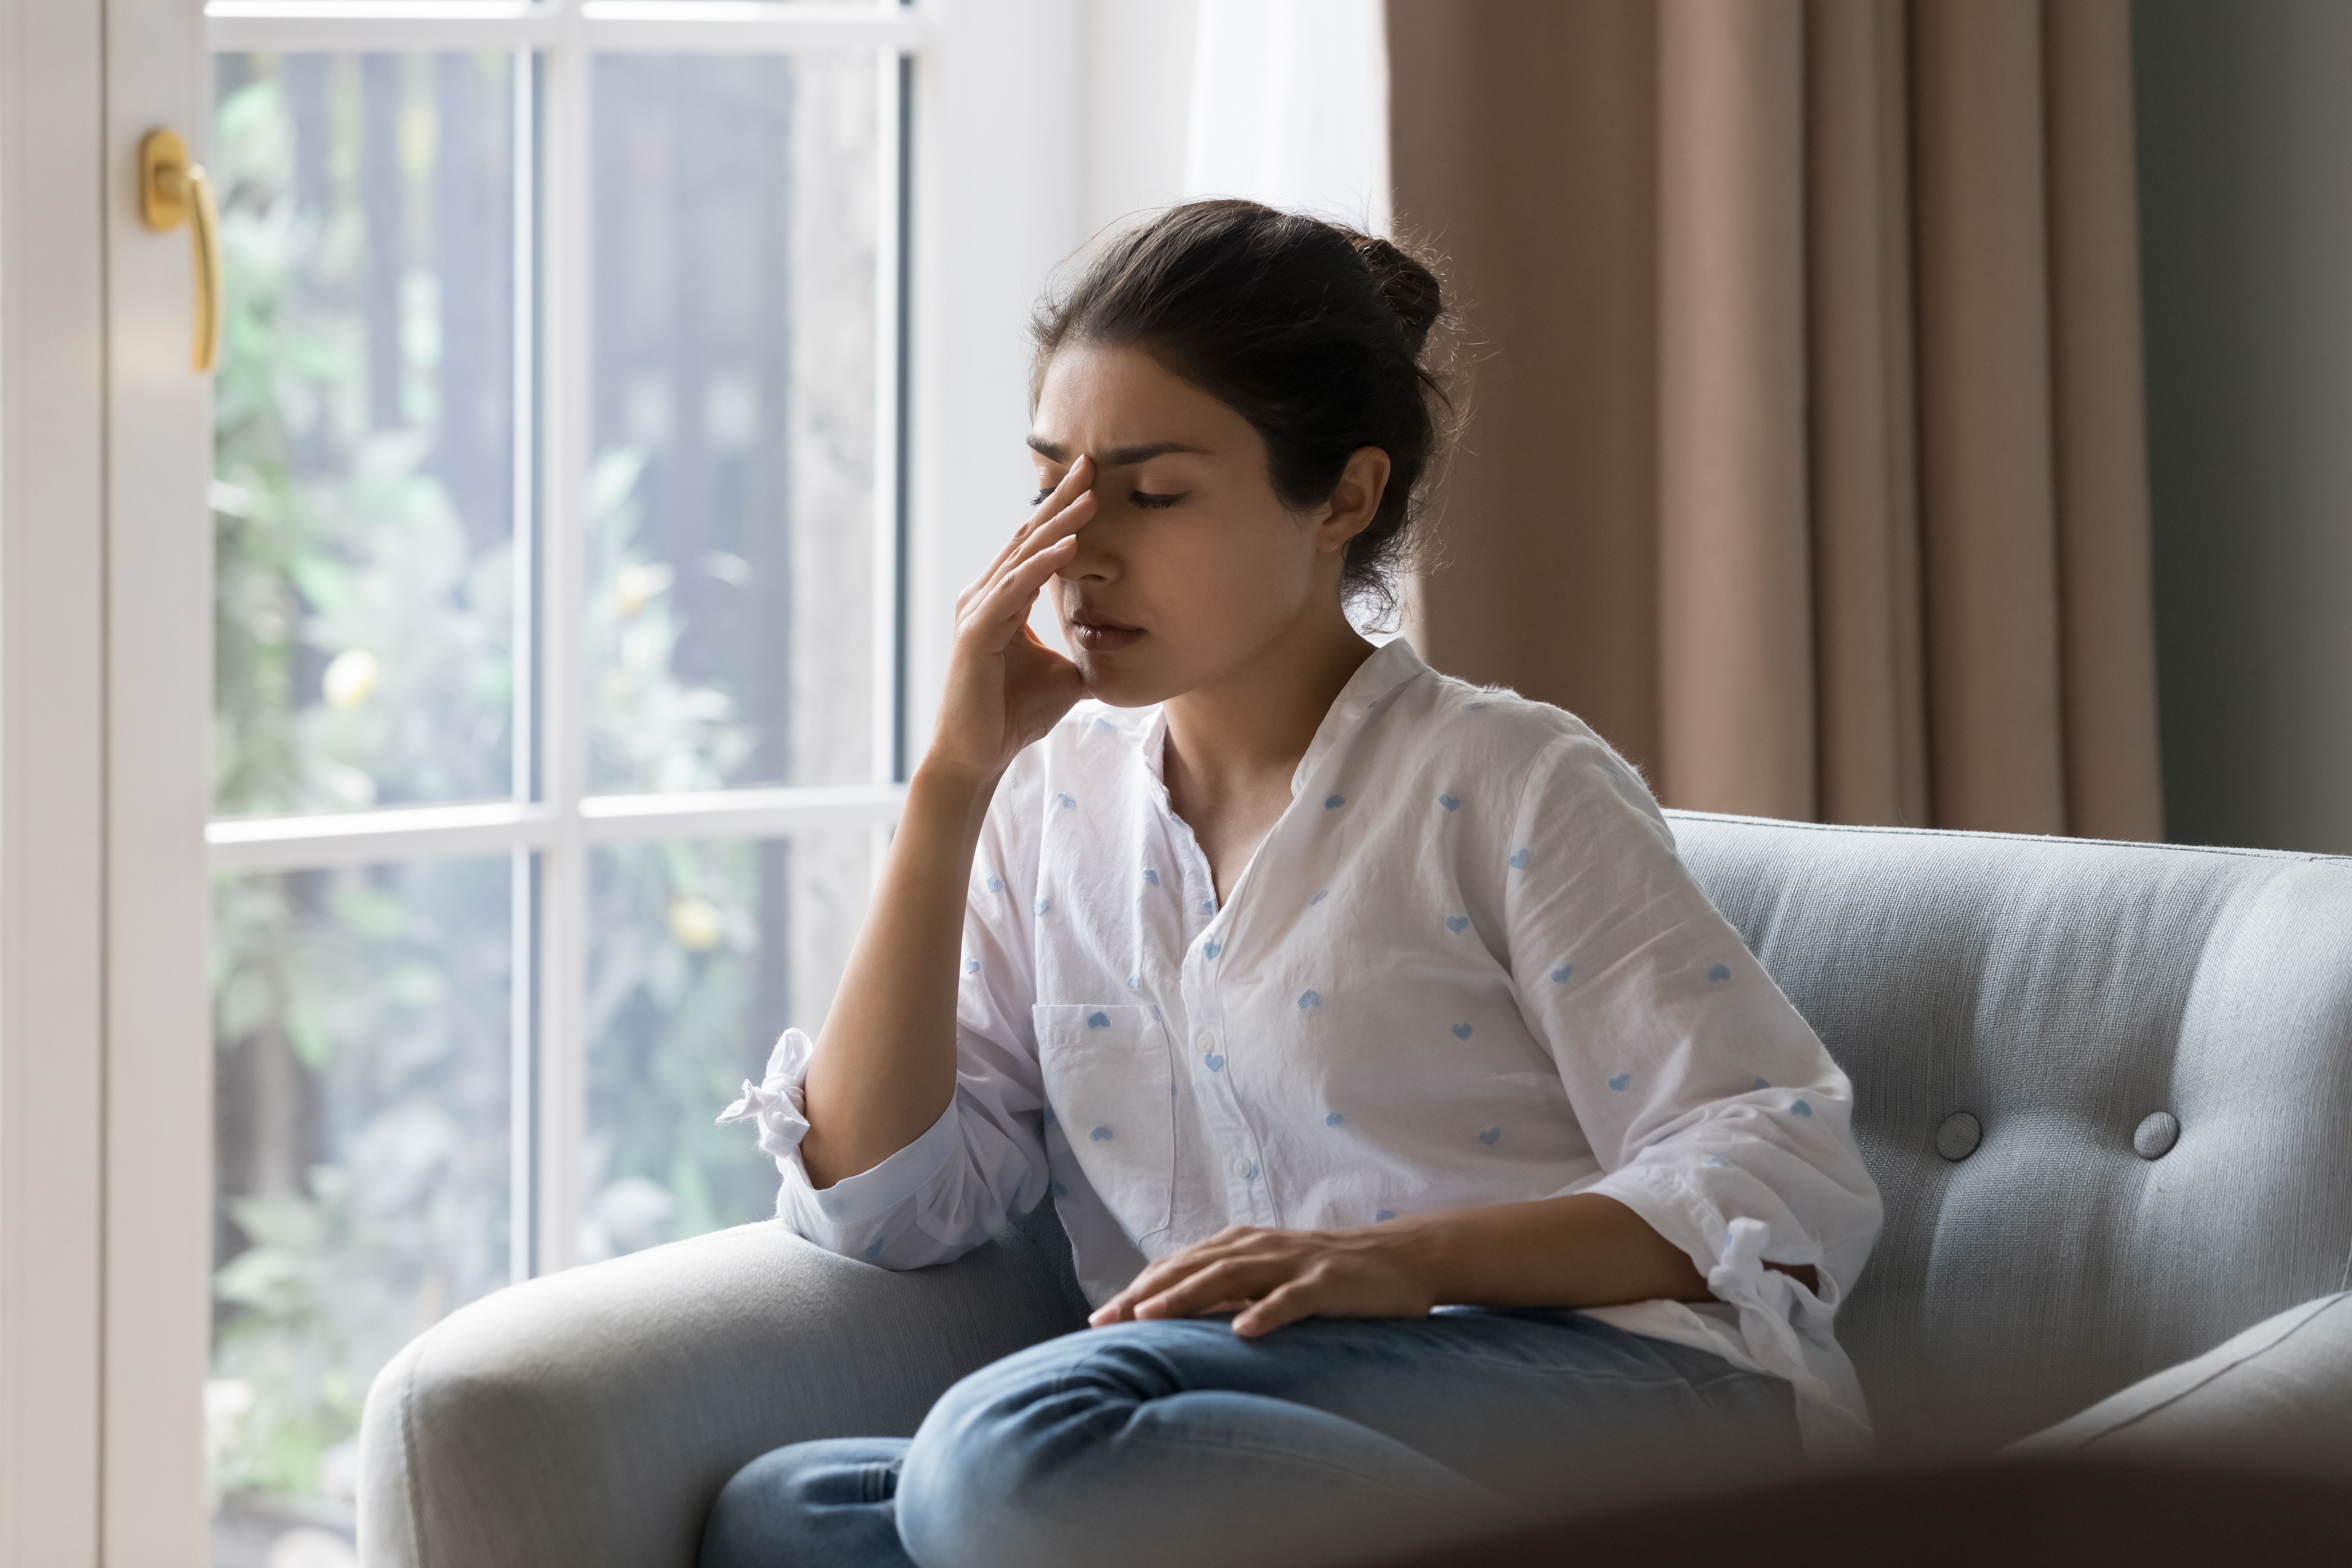 Eine frustrierte Frau sitzt auf einem Sofa | Quelle: Shutterstock